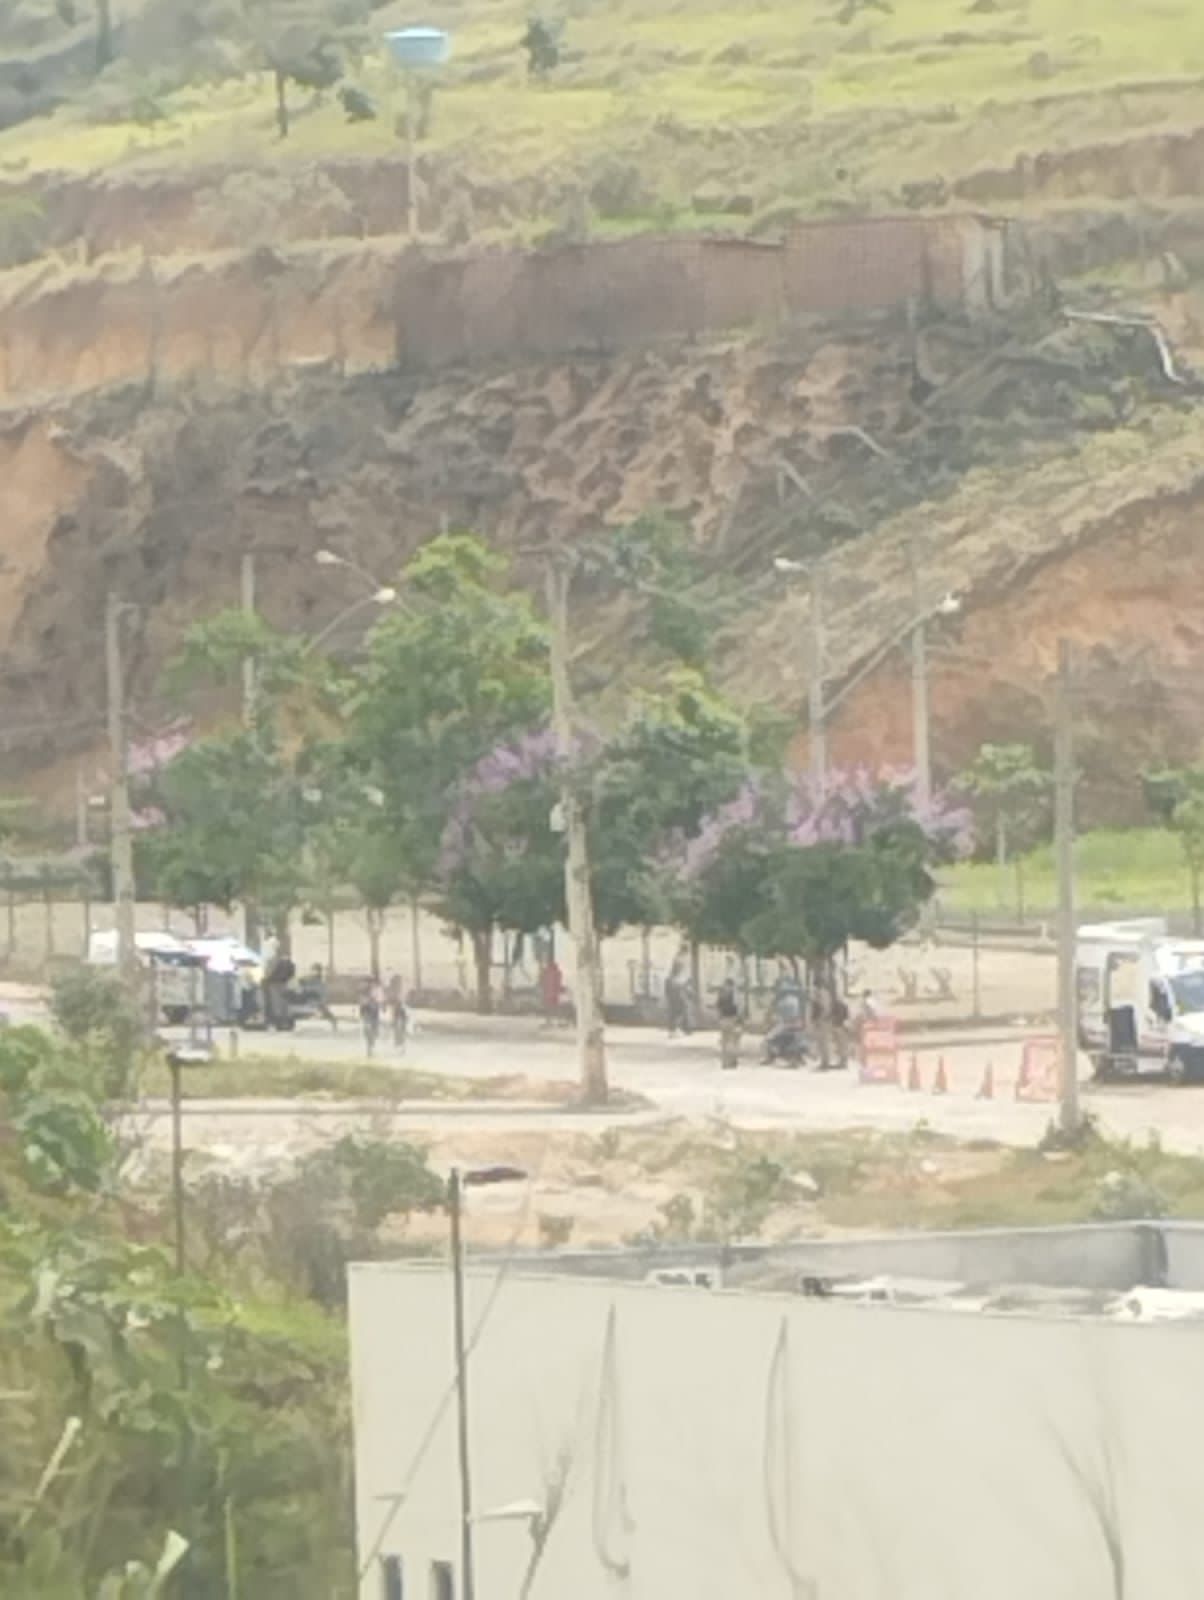 Polícia Militar volta a realizar operação nas “Casinhas do Viriato” na manhã desta terça-feira, em Teó